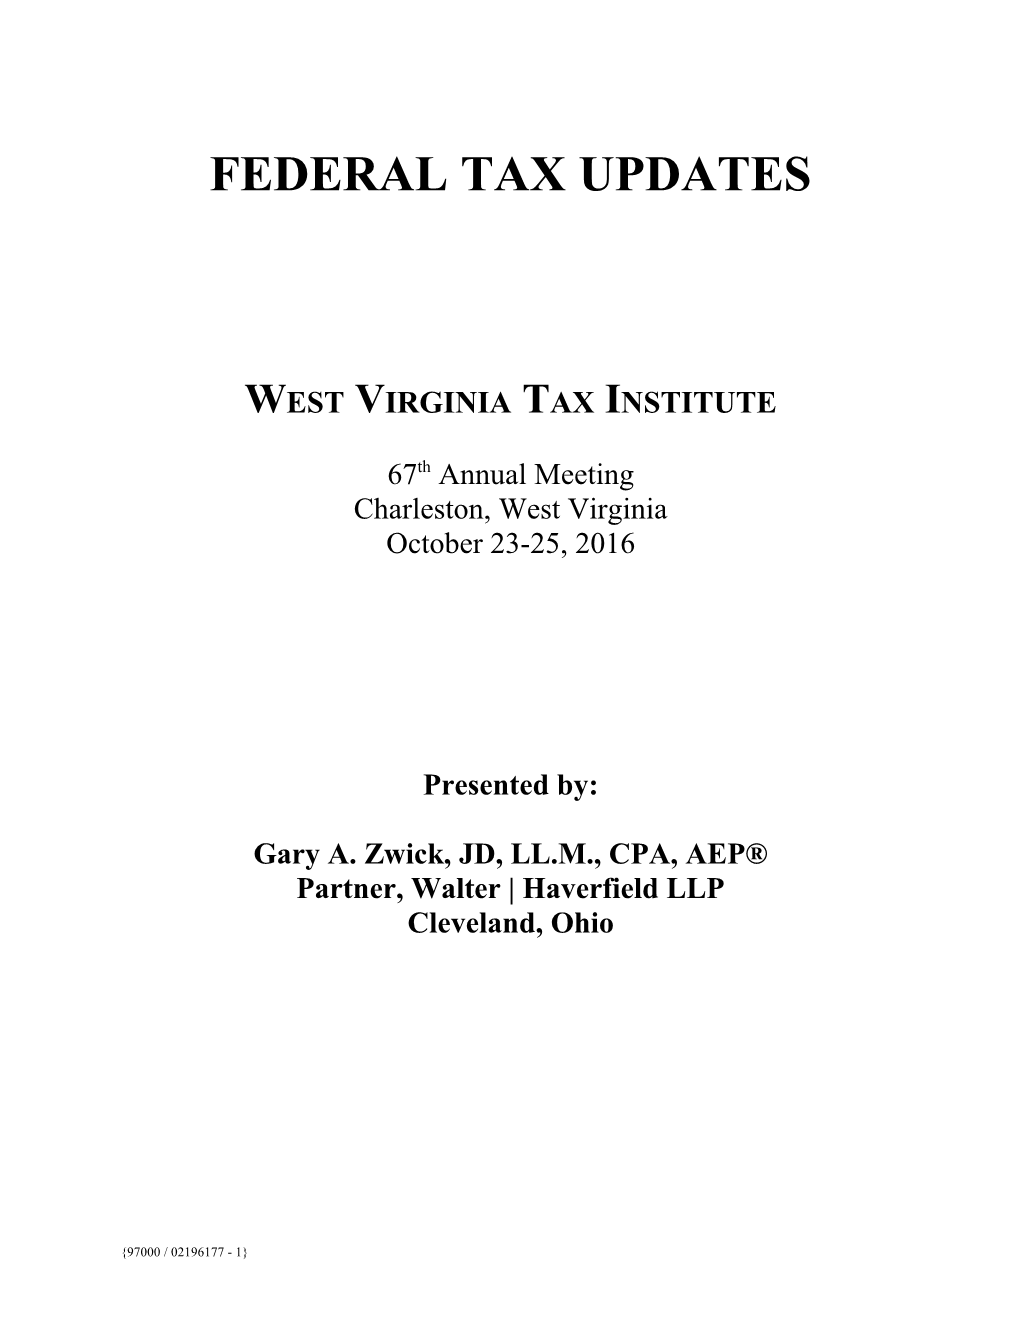 West Virginia Tax Institute